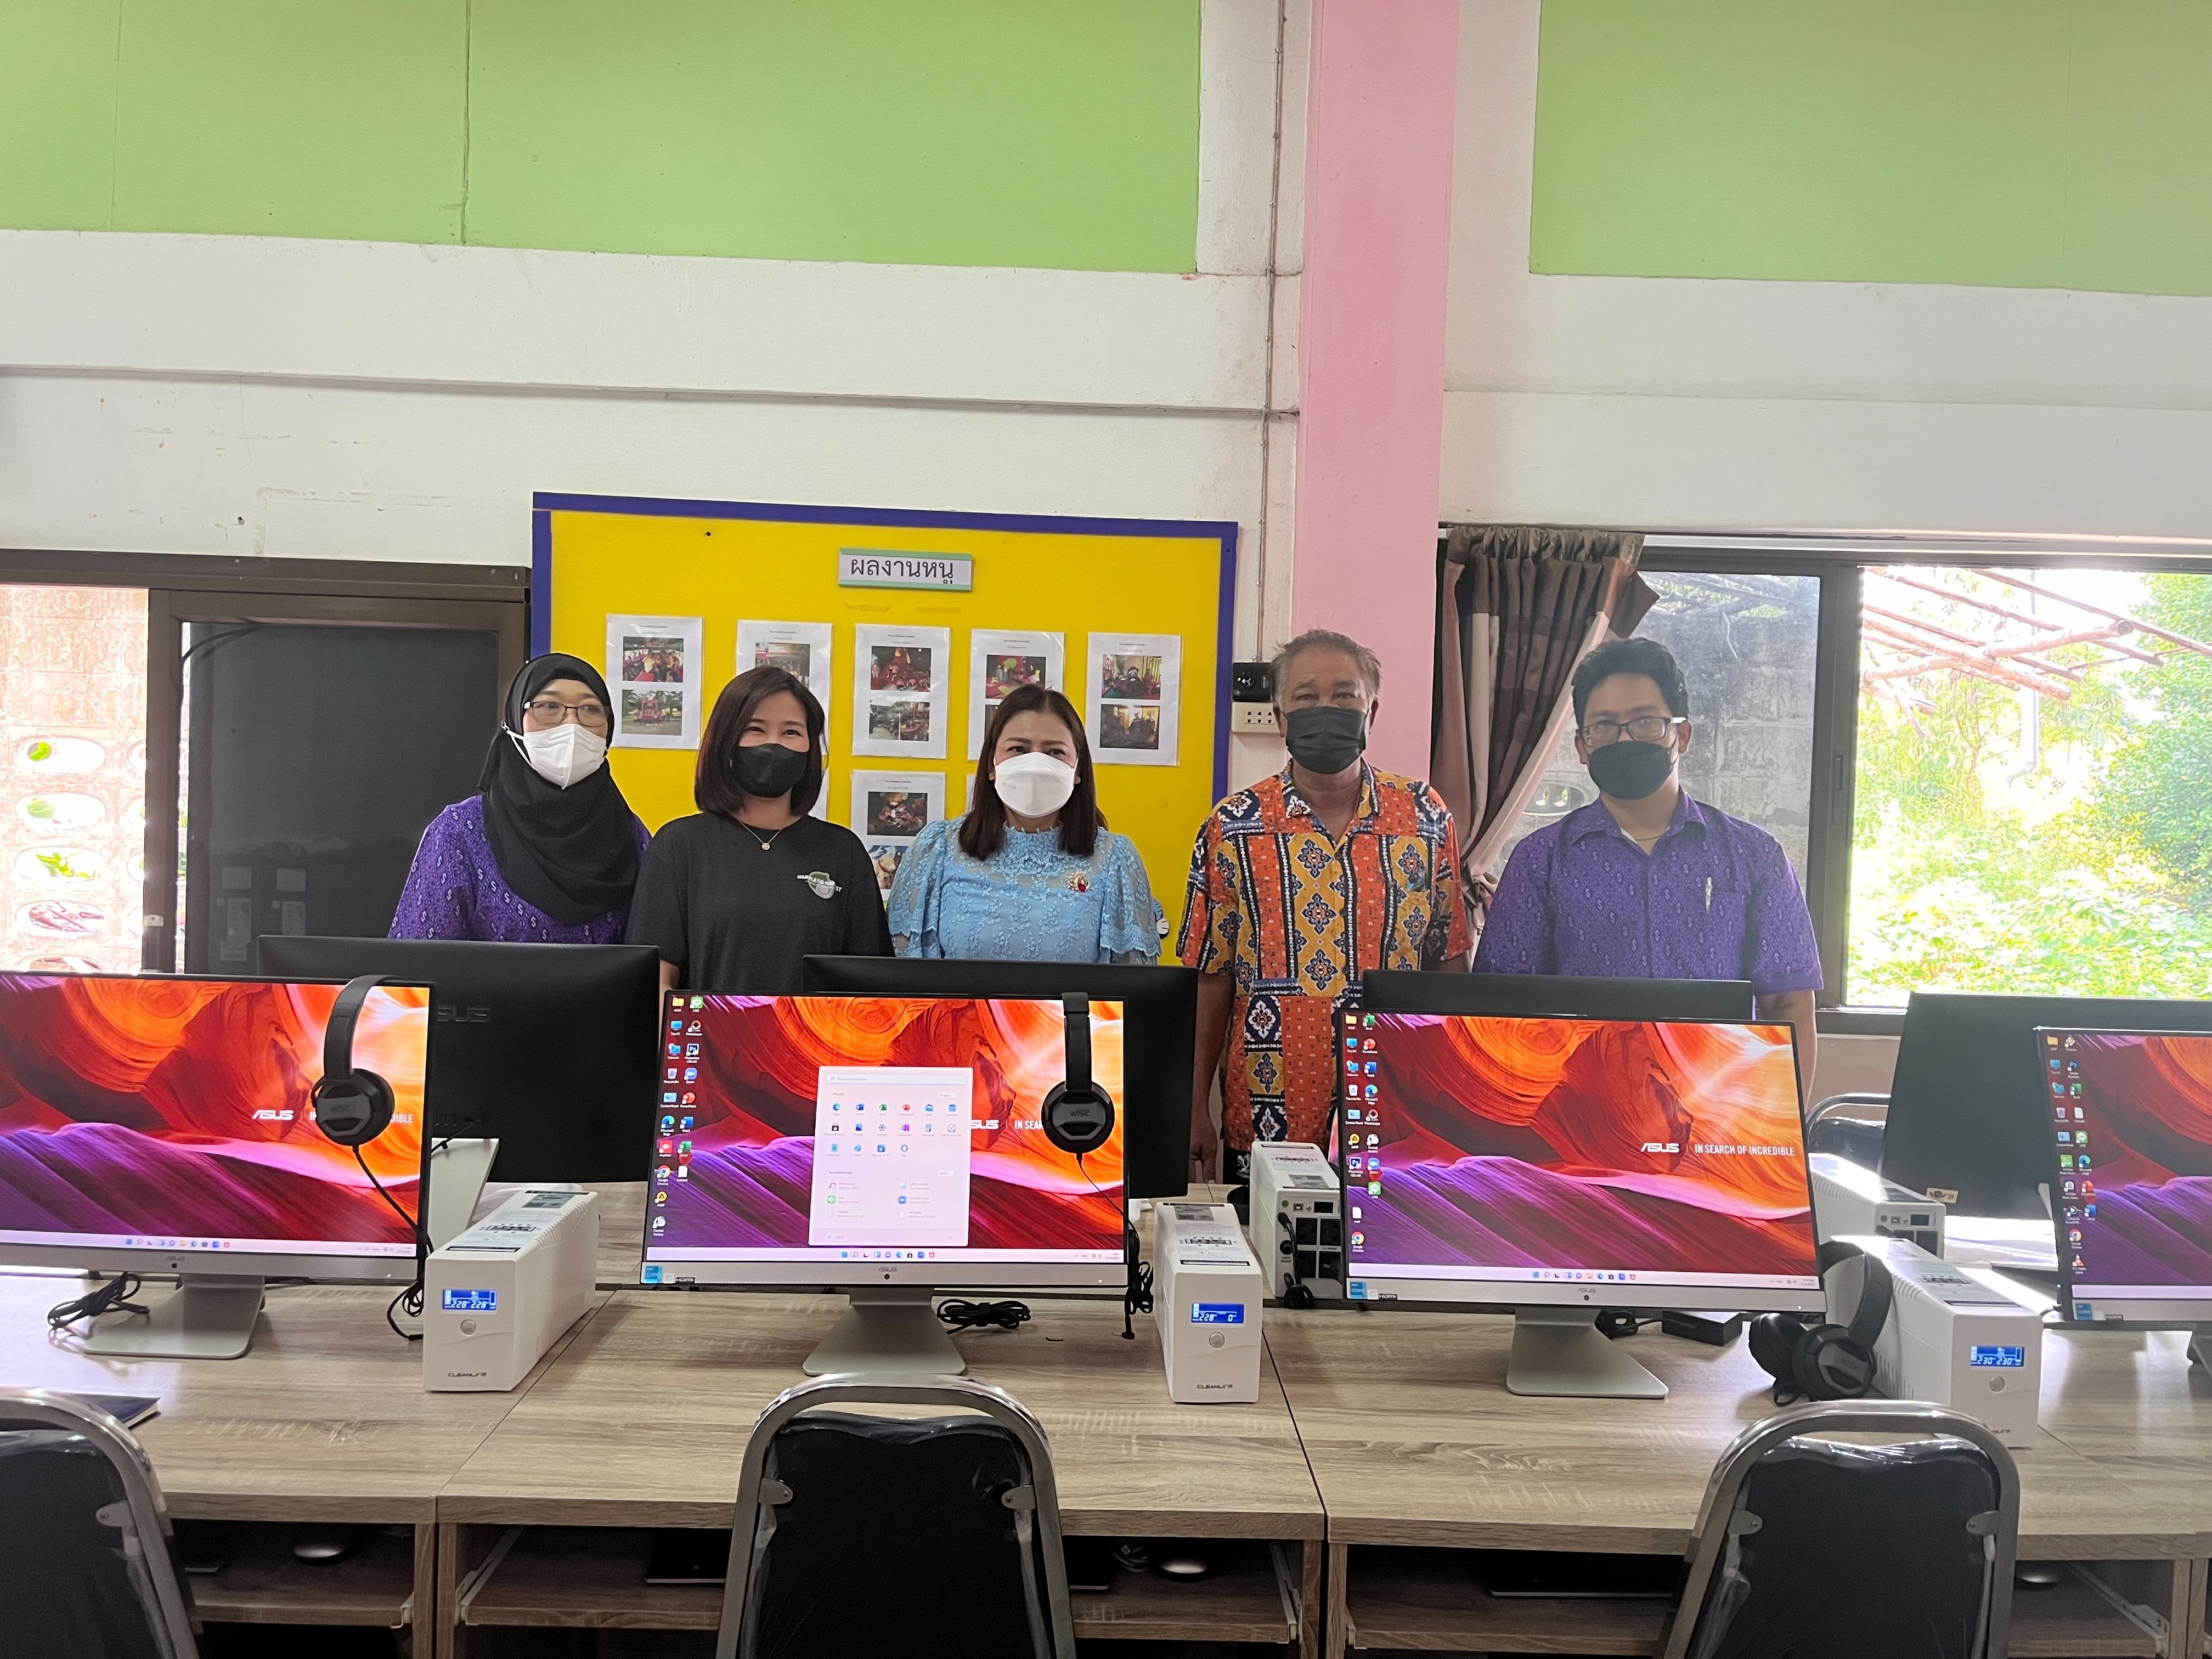 บริษัทฮาร์มเลส ฮาร์เวสท์ (ไทยแลนด์) จำกัด ร่วมกับมูลนิธิรักษ์ไทย สนับสนุนห้องเรียนพร้อมทั้งอุปกรณ์คอมพิวเตอร์จำนวน 20 ชุดและส่งมอบให้แก่โรงเรียนวัดตาลเรียง หลังโดนไฟไหม้อาคารเรียน